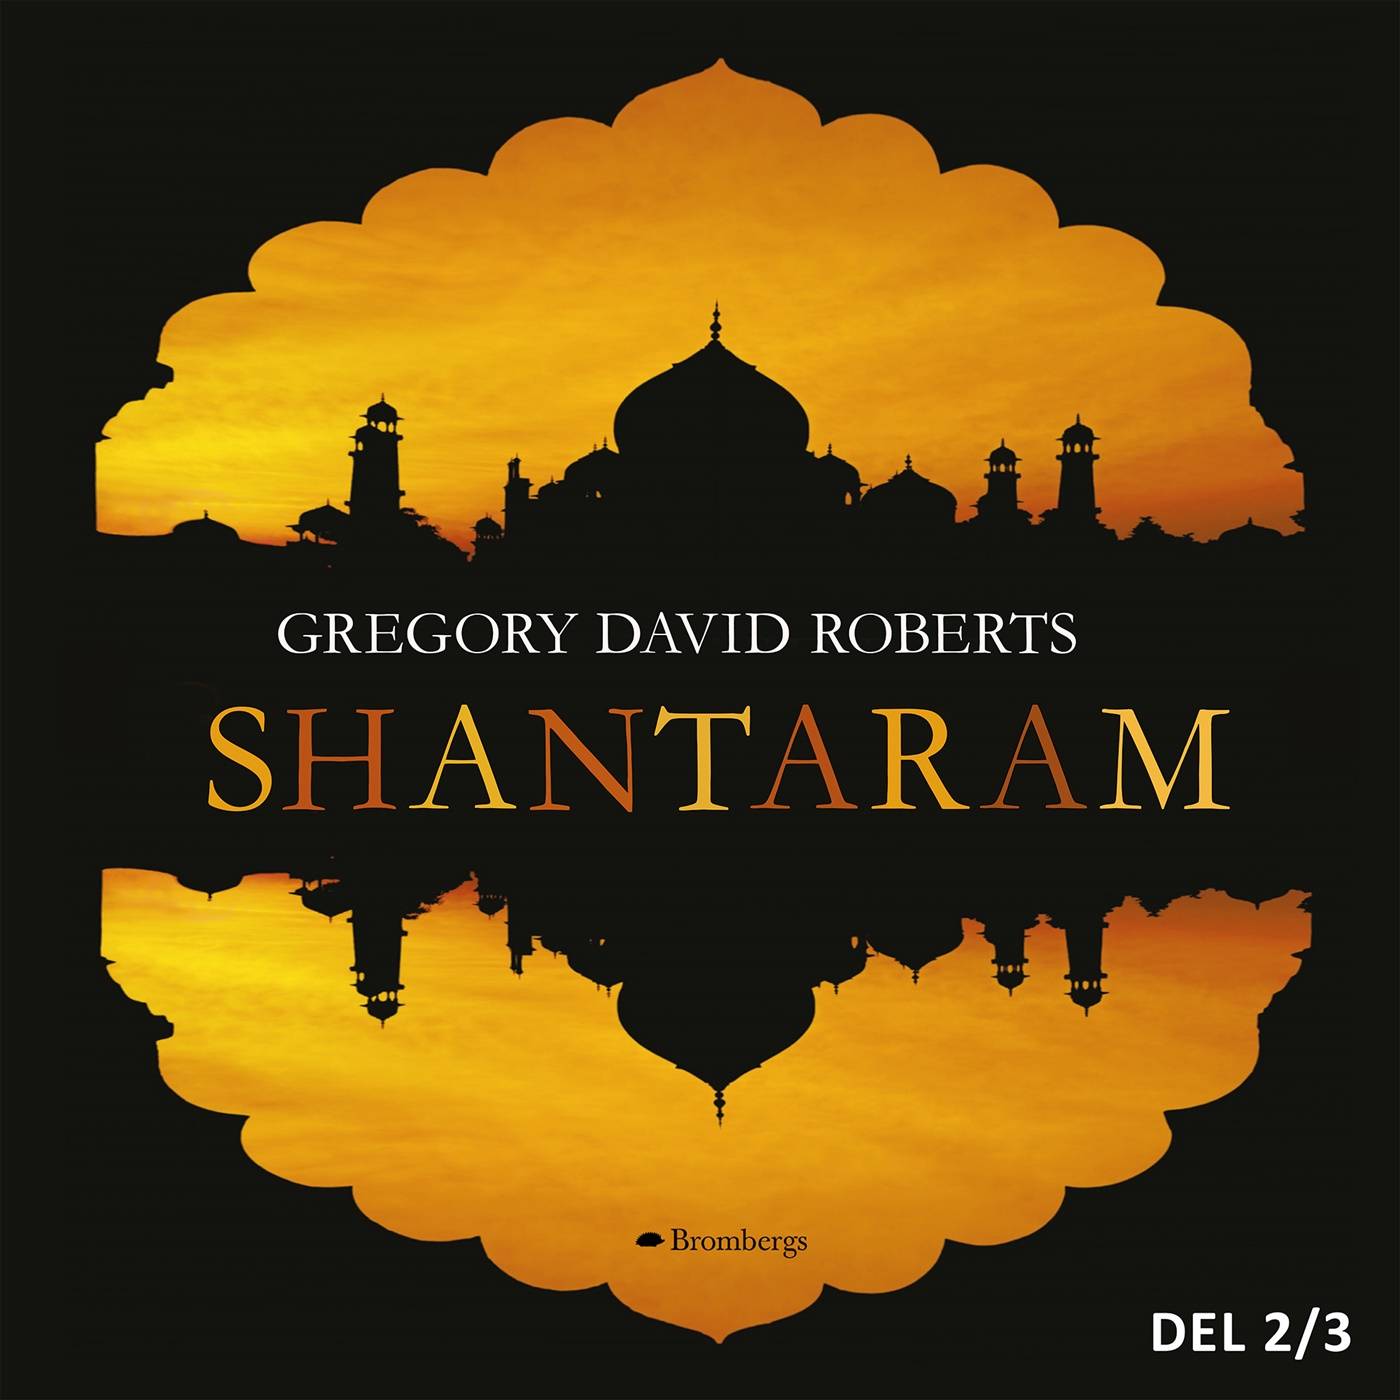 Shantaram. Del 2